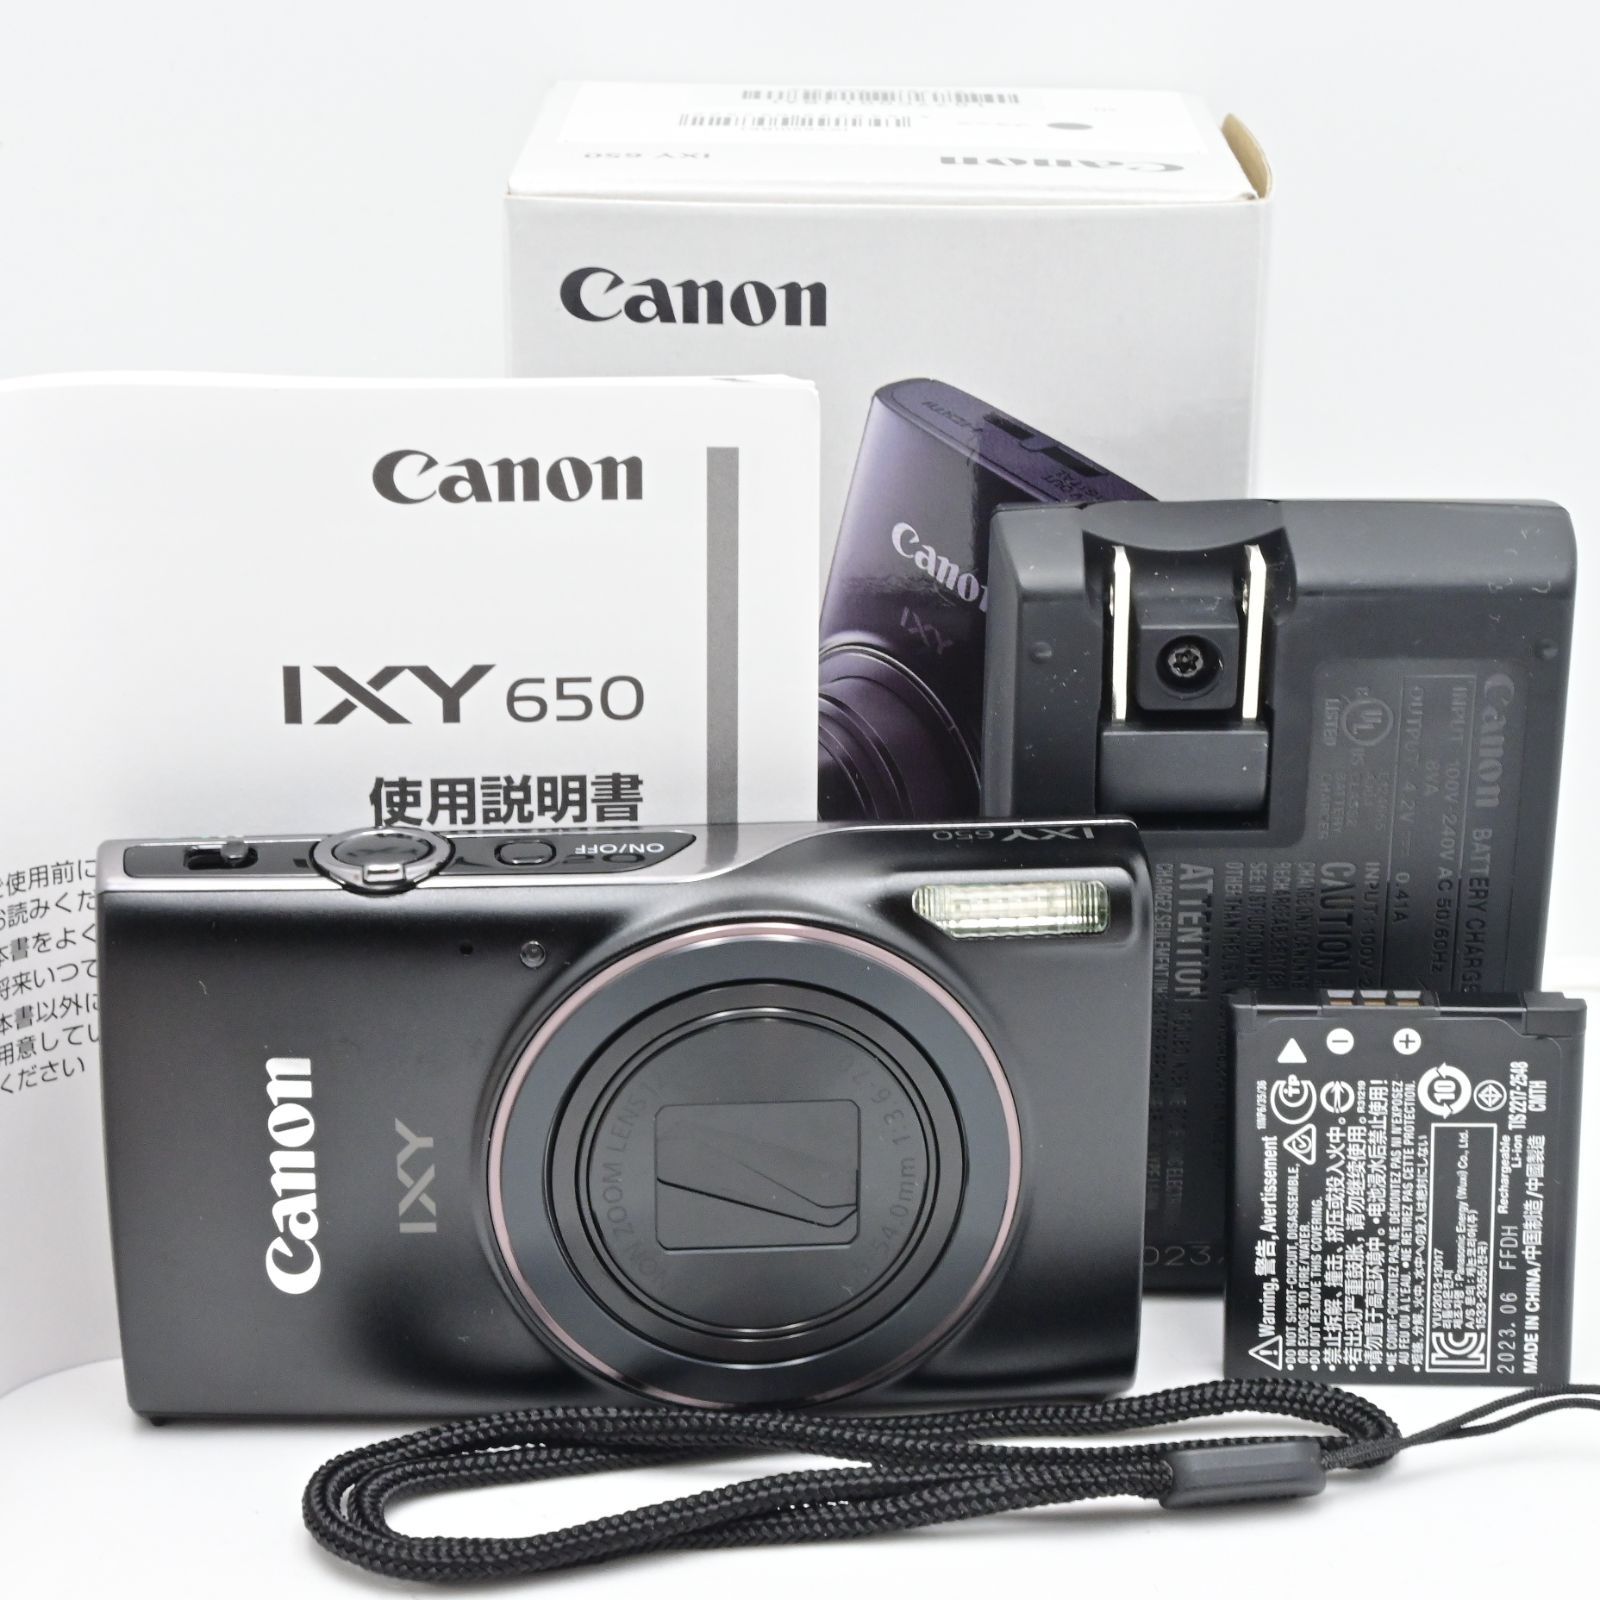 Canon コンパクトデジタルカメラ IXY 650 ブラック 光学12倍ズーム/Wi-Fi対応 IXY650BK - メルカリ